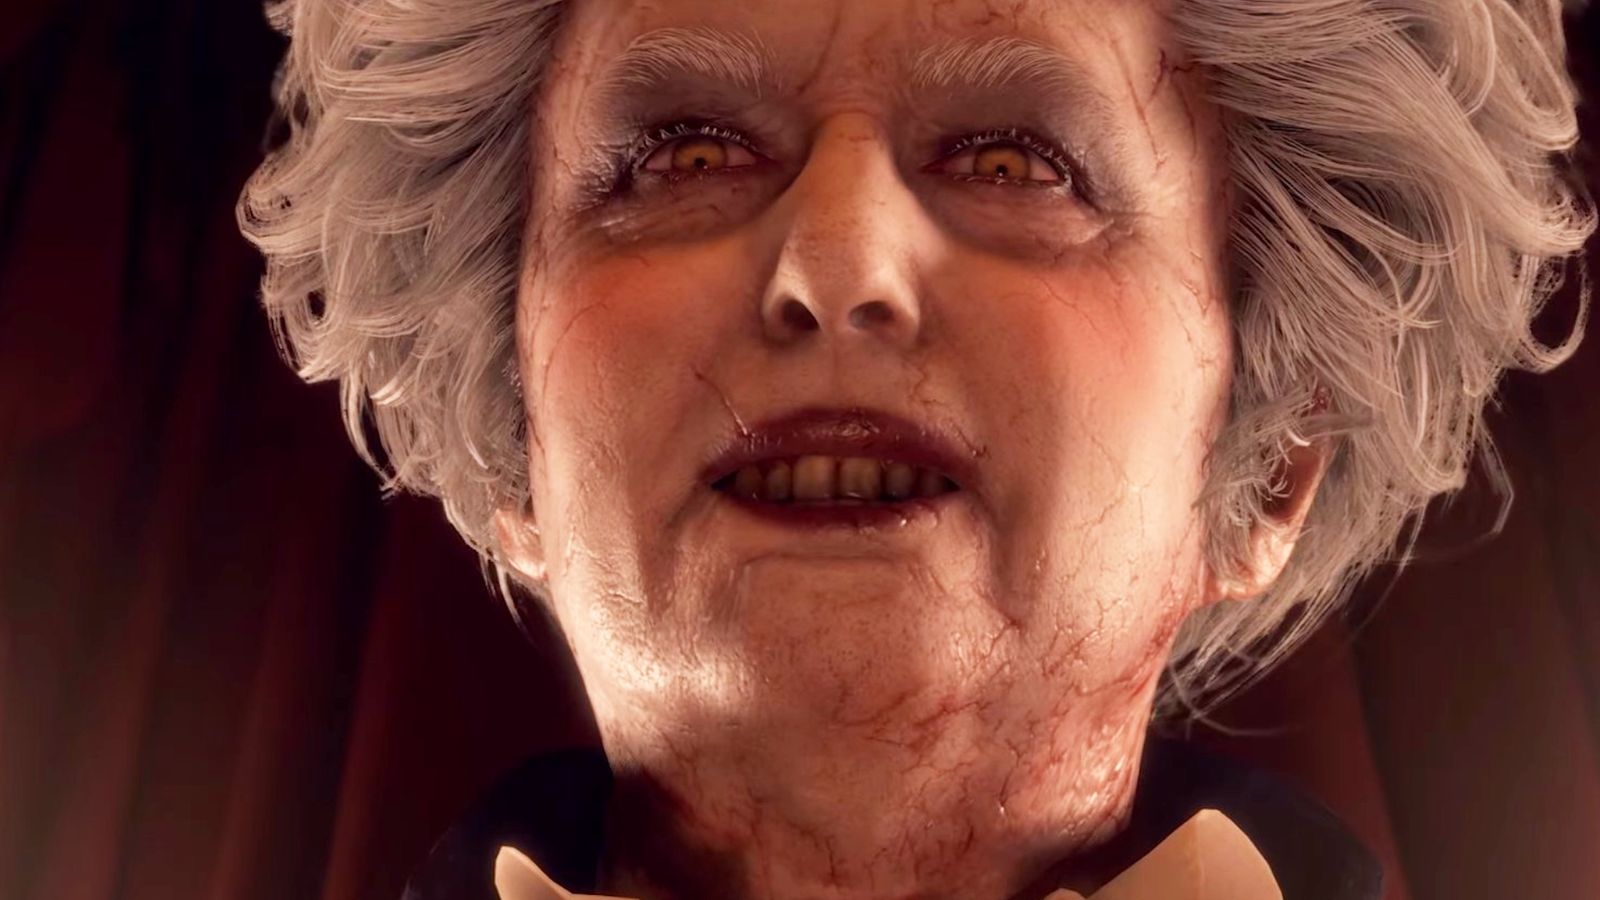 An image of Salazar from Resident Evil 4 remake looking like deceased Prime Minister Margaret Hilda Thatcher. 